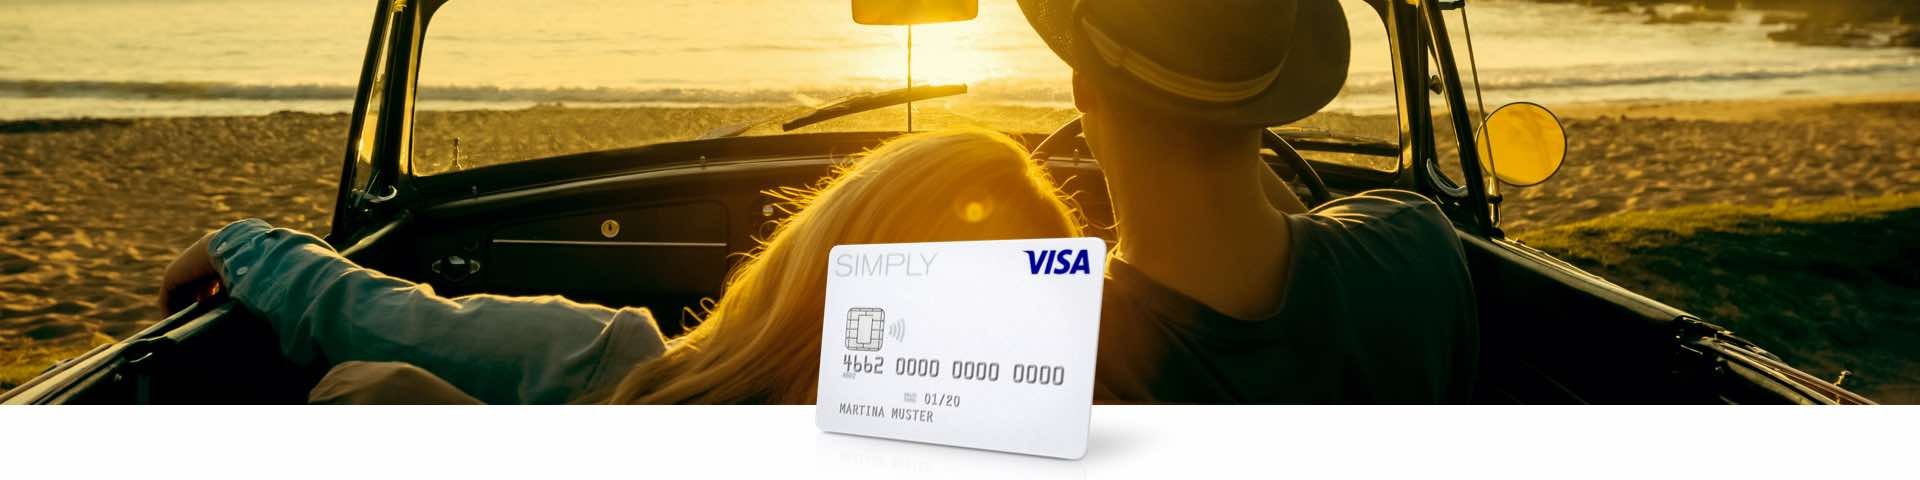 SIMPLYCARD | Visa Card - Kreditkarte